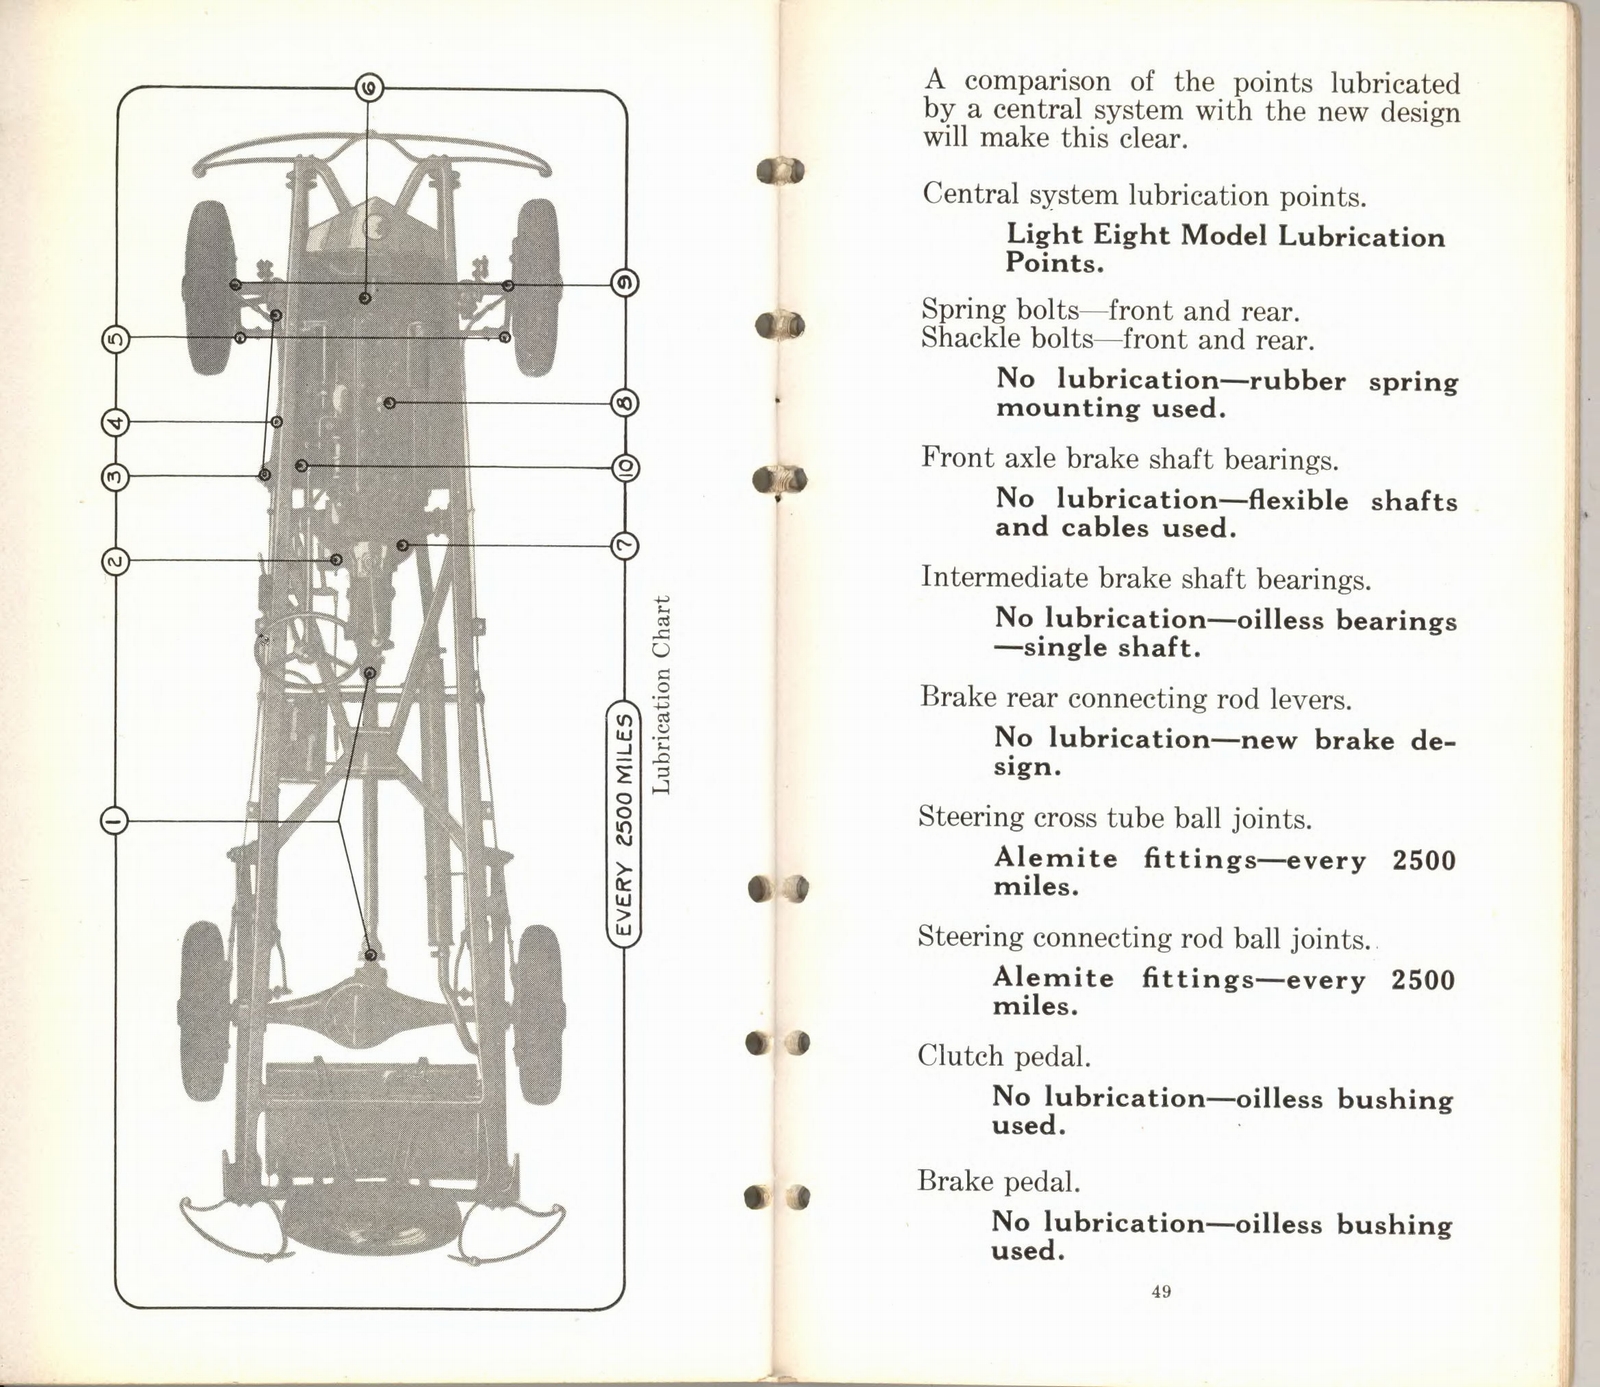 n_1932 Packard Light Eight Facts Book-48-49.jpg